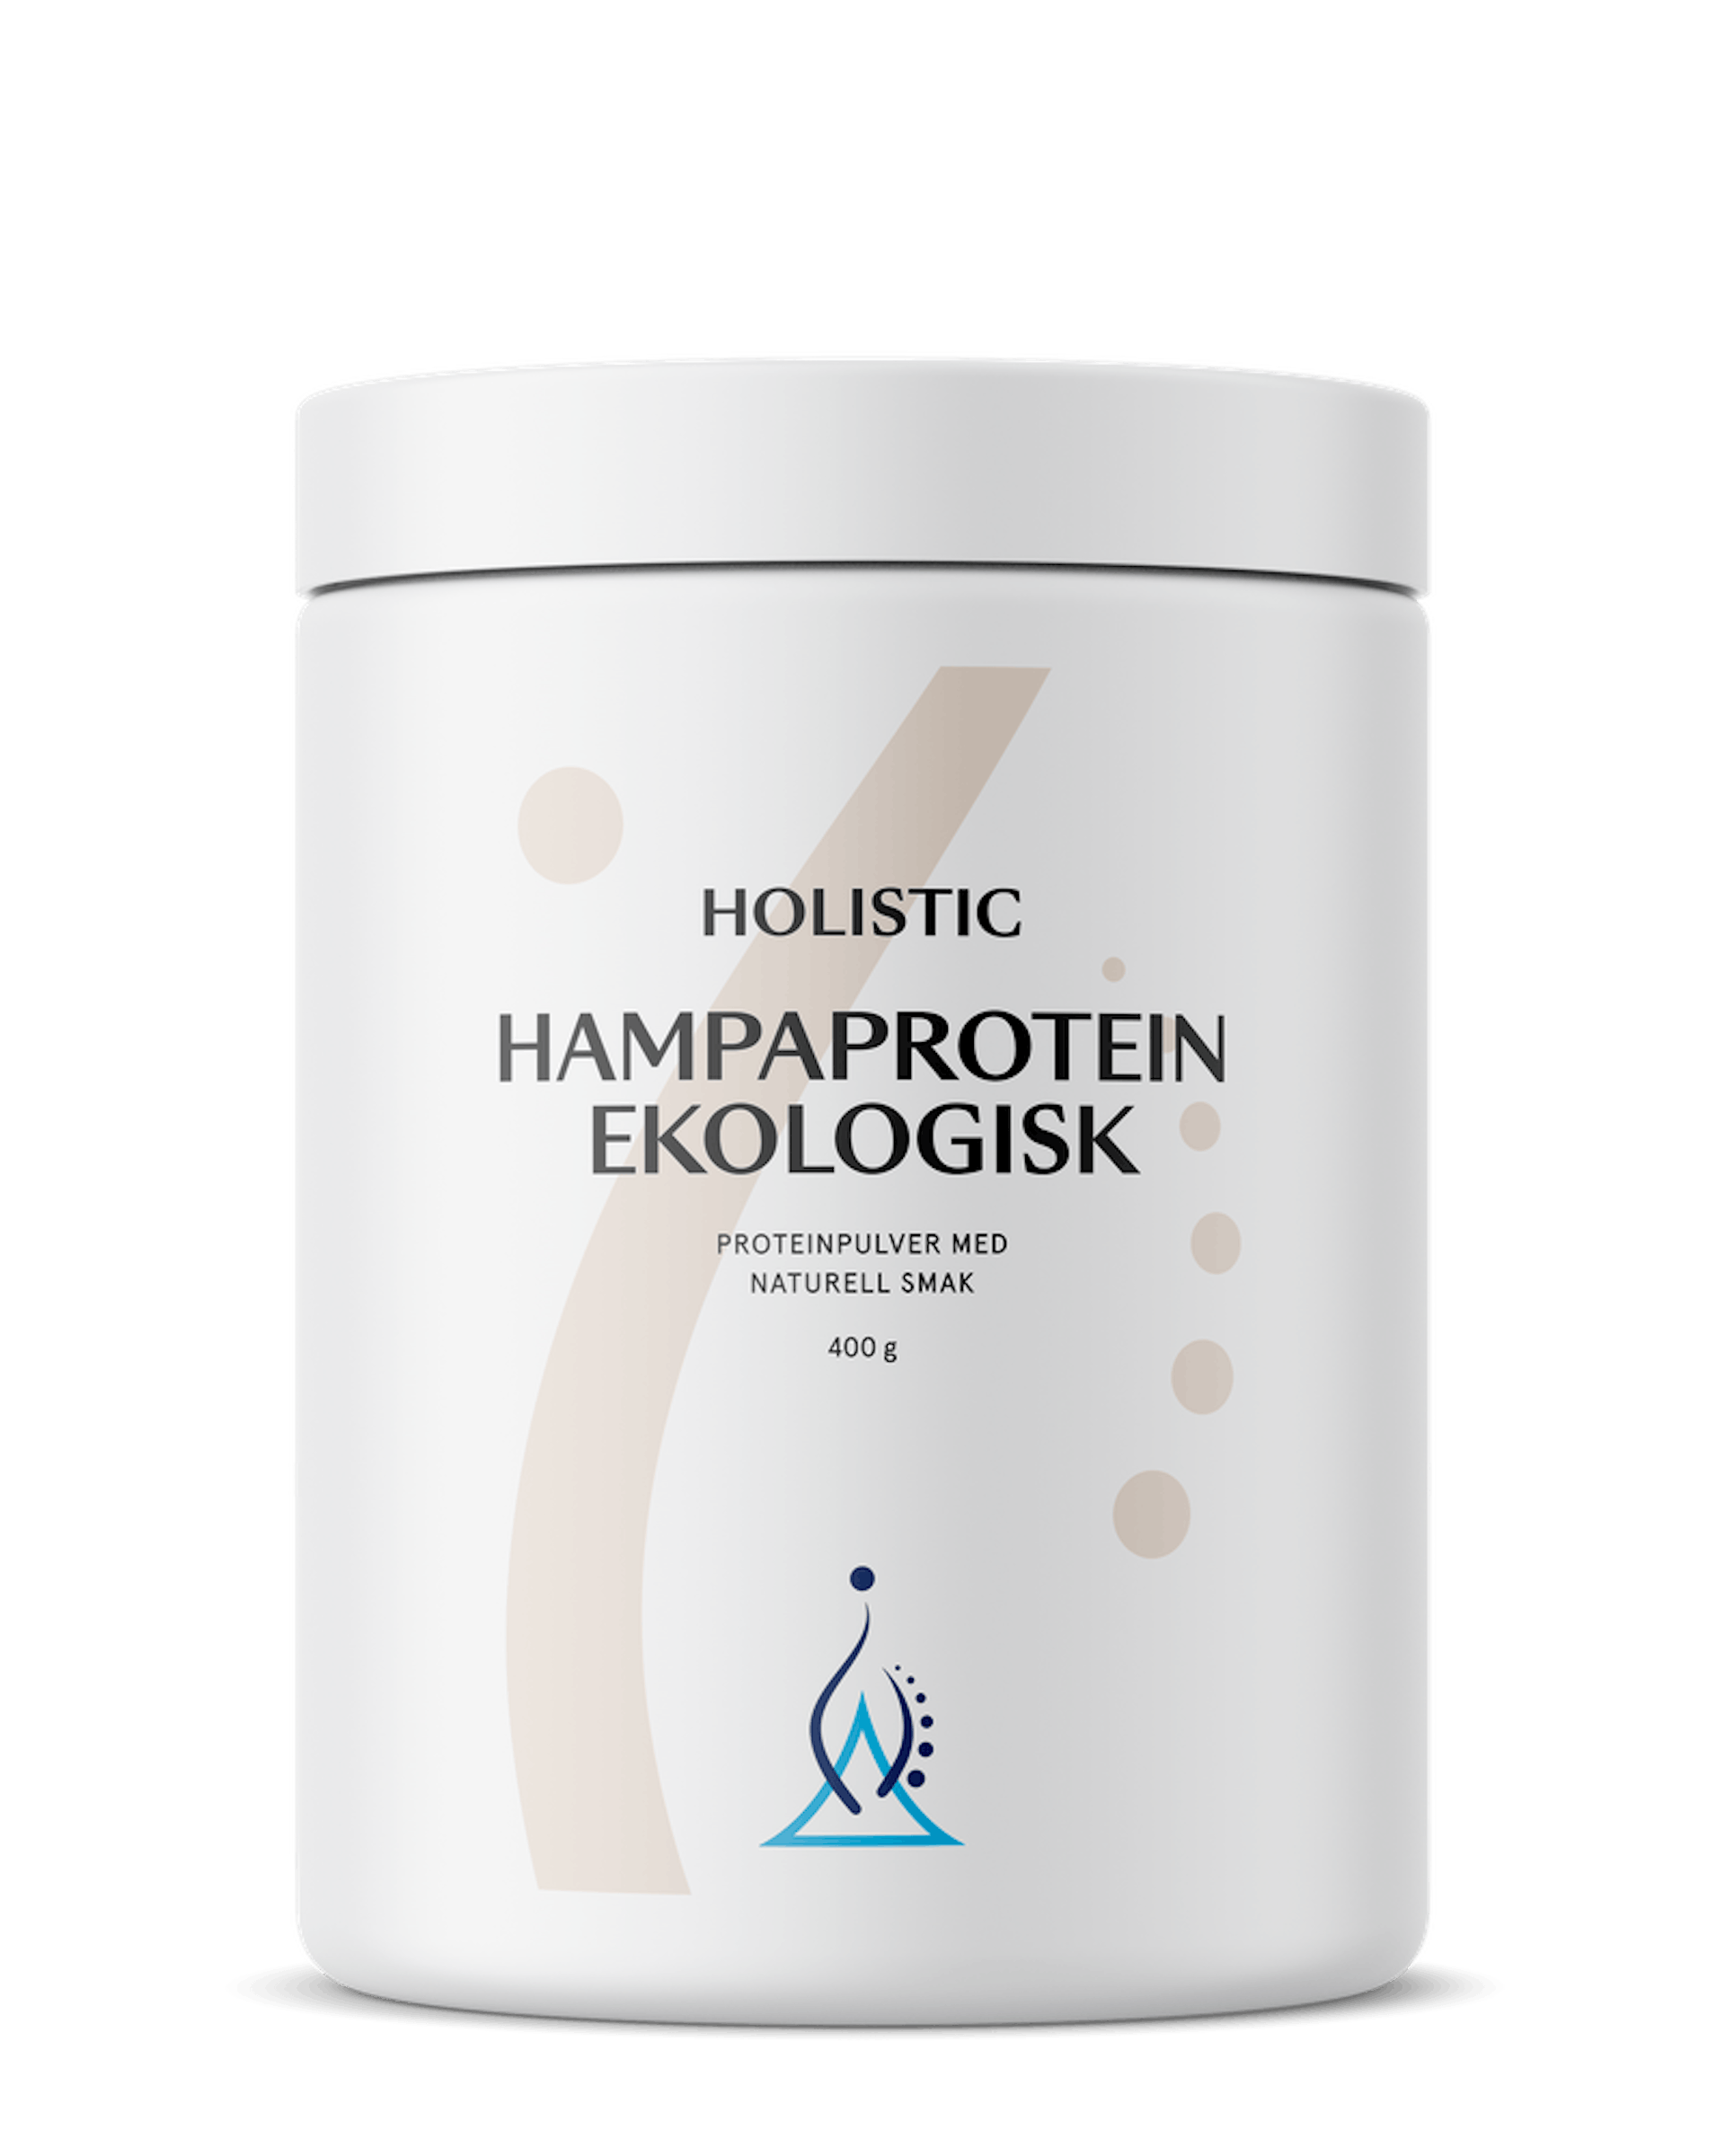 Hampaprotein ekologisk, 400 g (1 av 1)